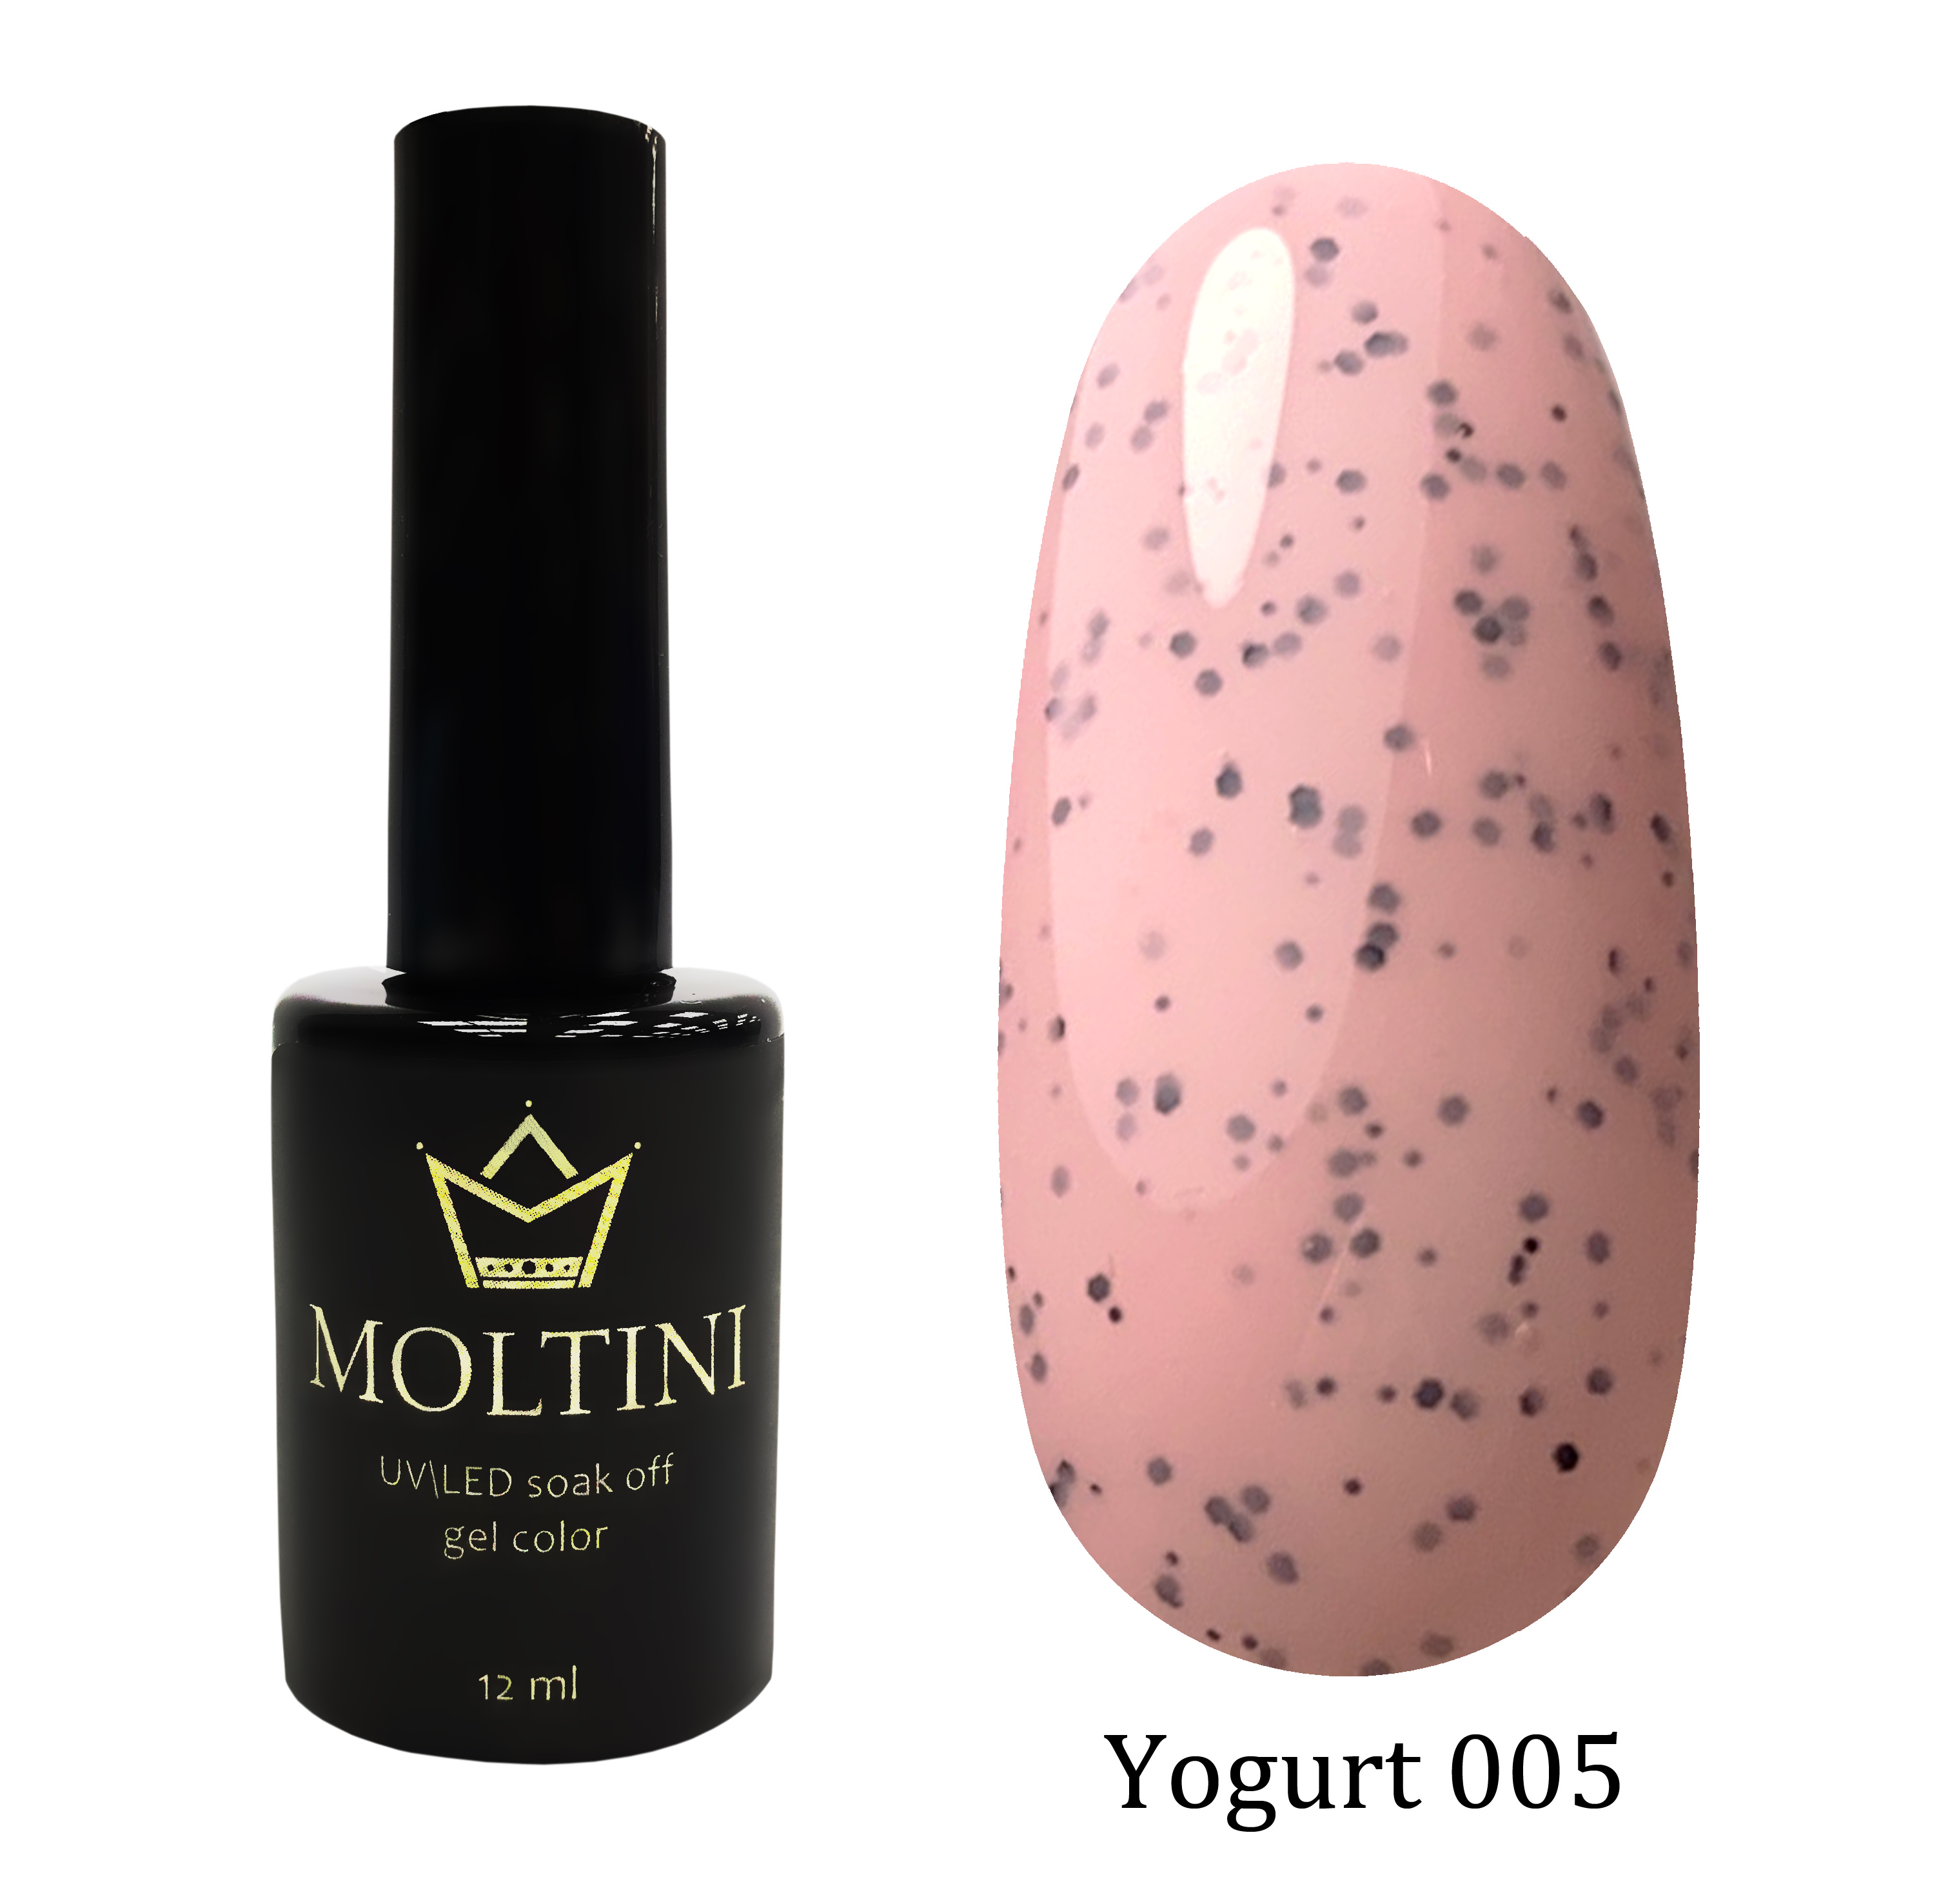 Moltini цветной гель-лак Yogurt 005, 12 мл